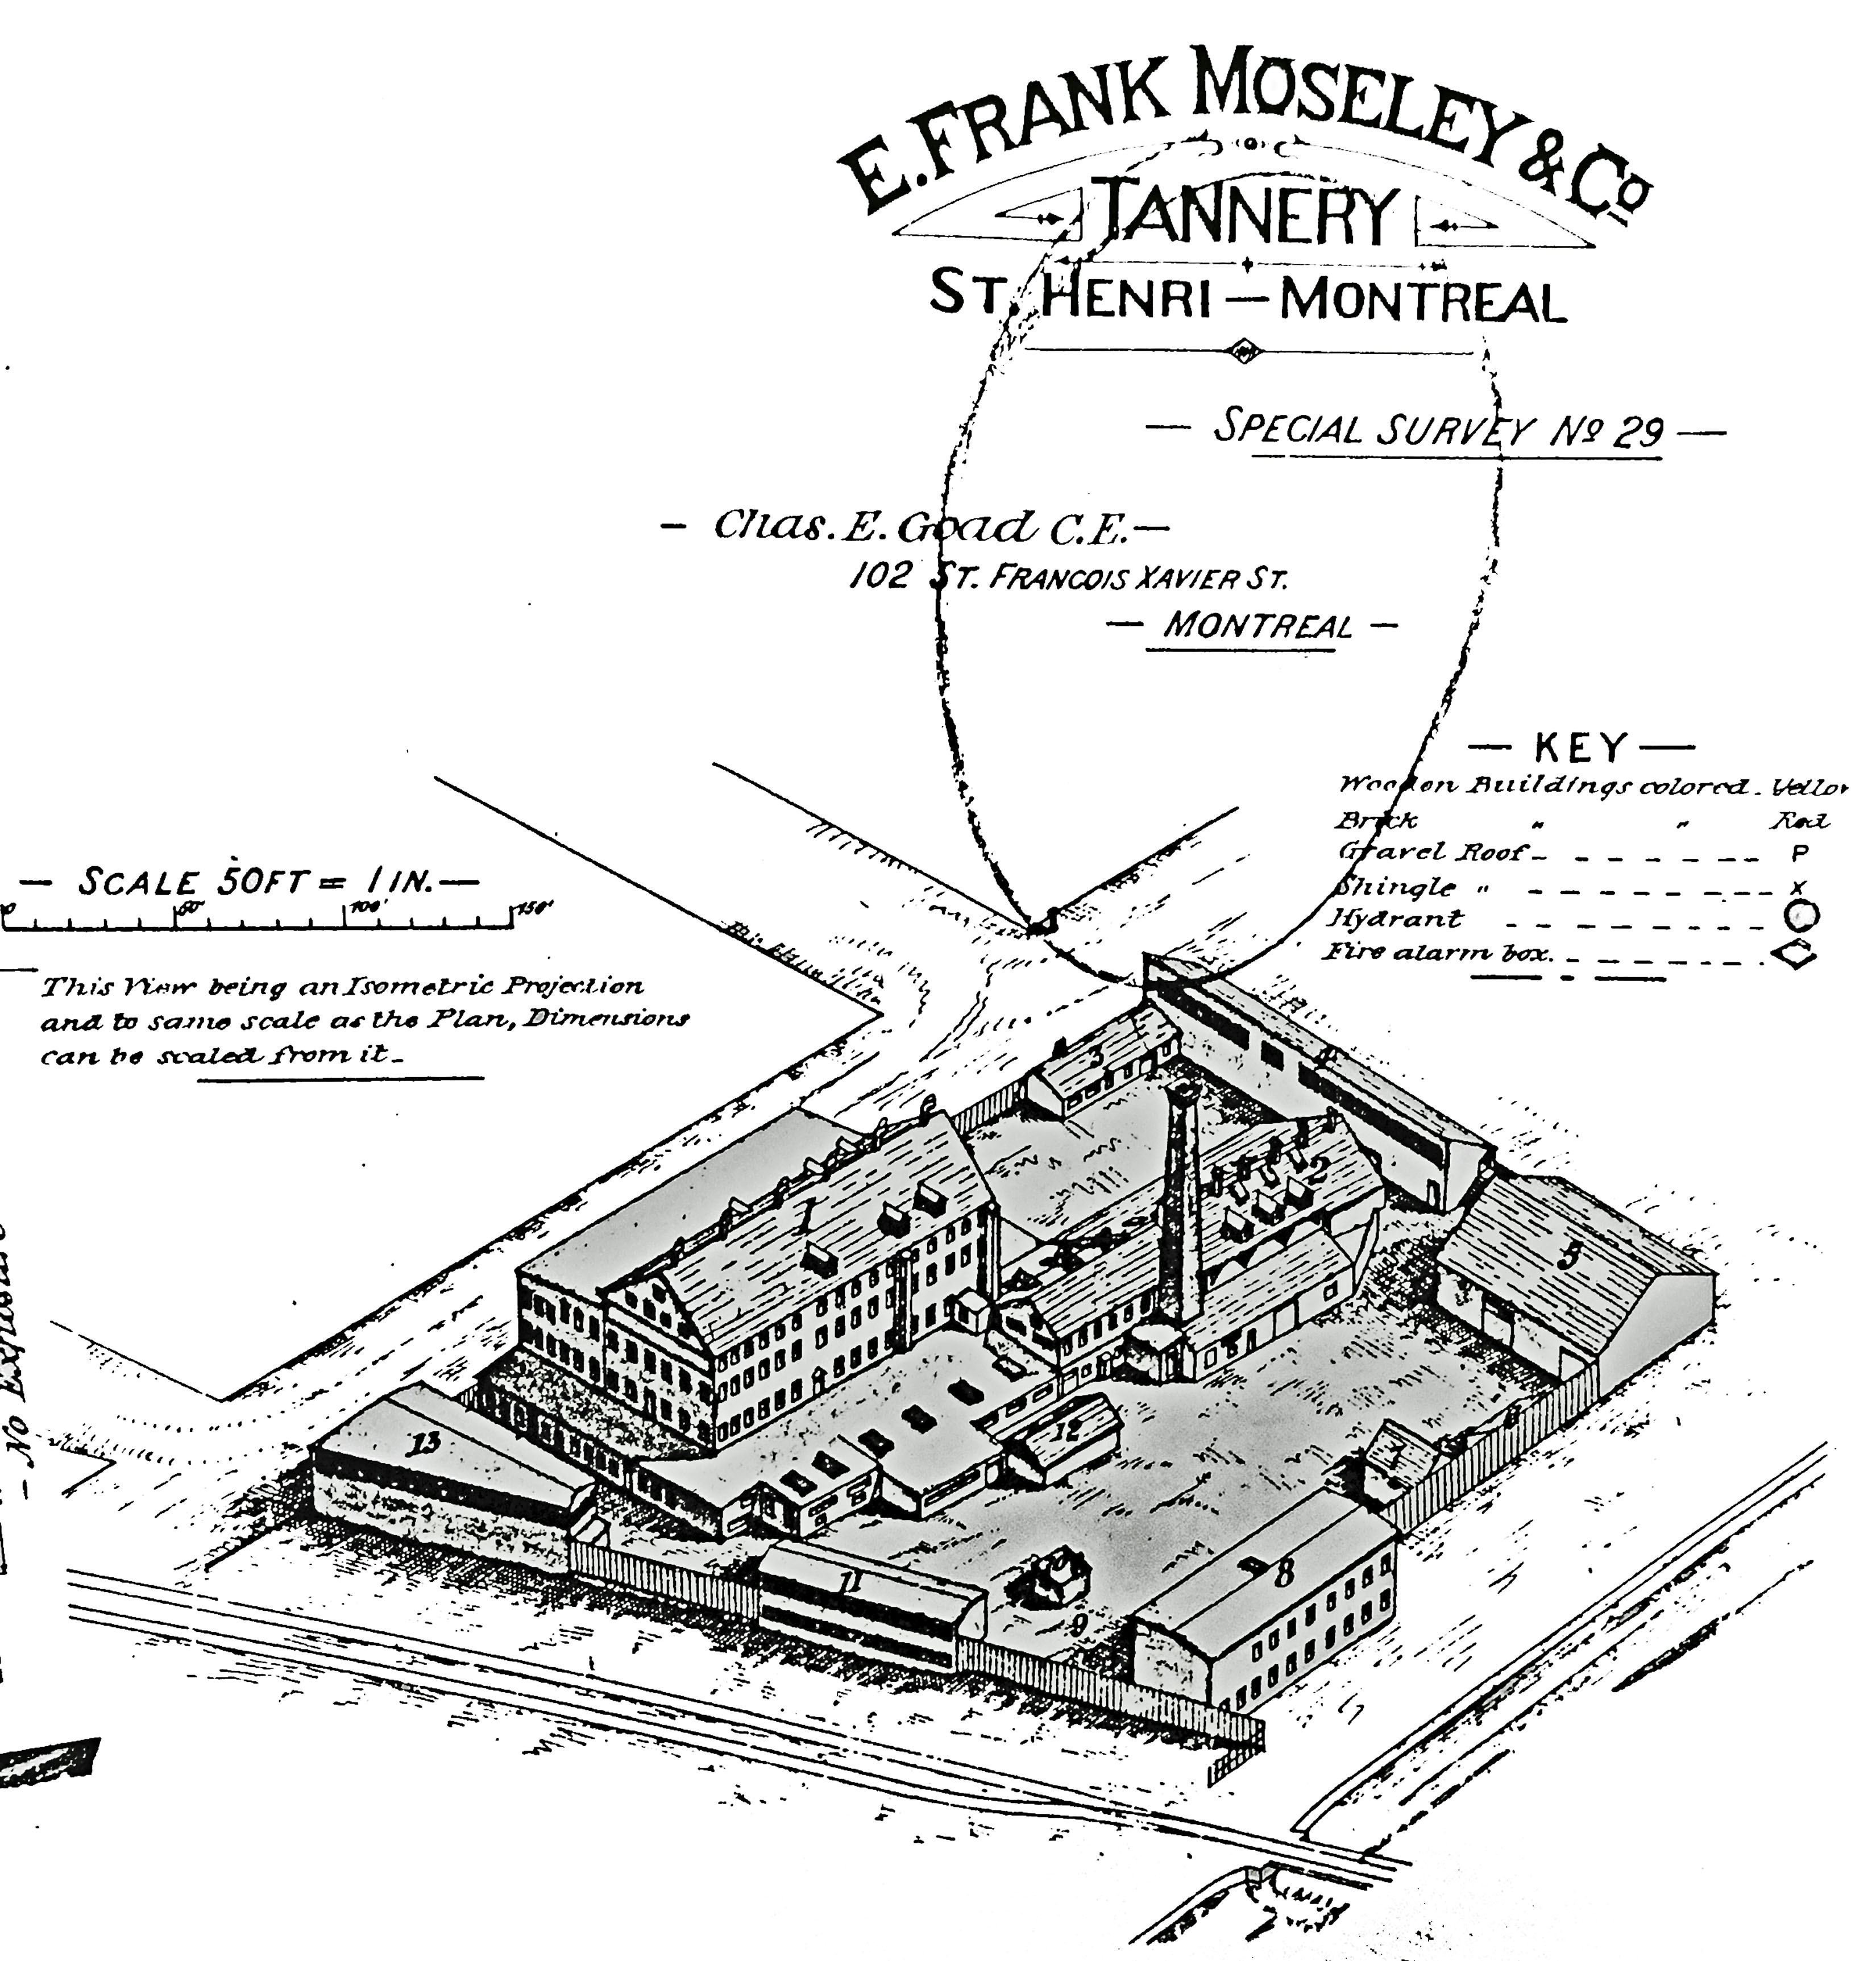 Plan de la tannerie Moseley